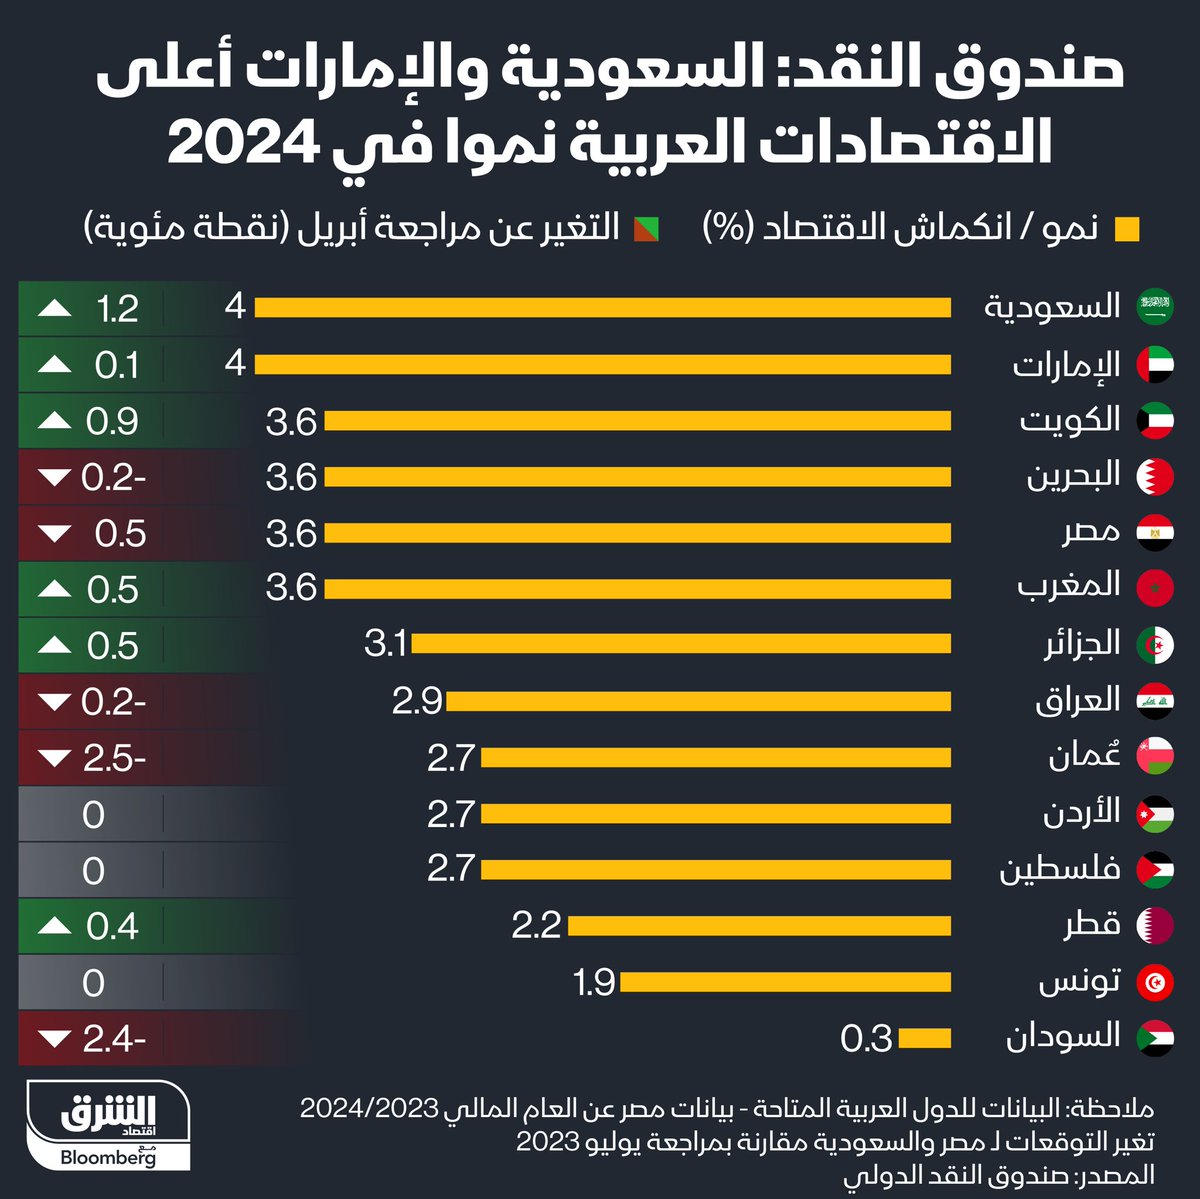 ❇️ #السعودية أولاً ...🇸🇦 ♦️صندوق النقد الدولي يصنف أعلى الإقتصادات العربية نمواً في 2024-2025 م وذكر أن #قارة_السعودية سوف تصل إلى معدل نمو 6% في العام العادم مقابل 2.6% في العام الجاري علماً بأن السعوديه الأولى عربياً بـ 1.11تريليون دولار الى ابريل 2024م والجدول التالي يوضح